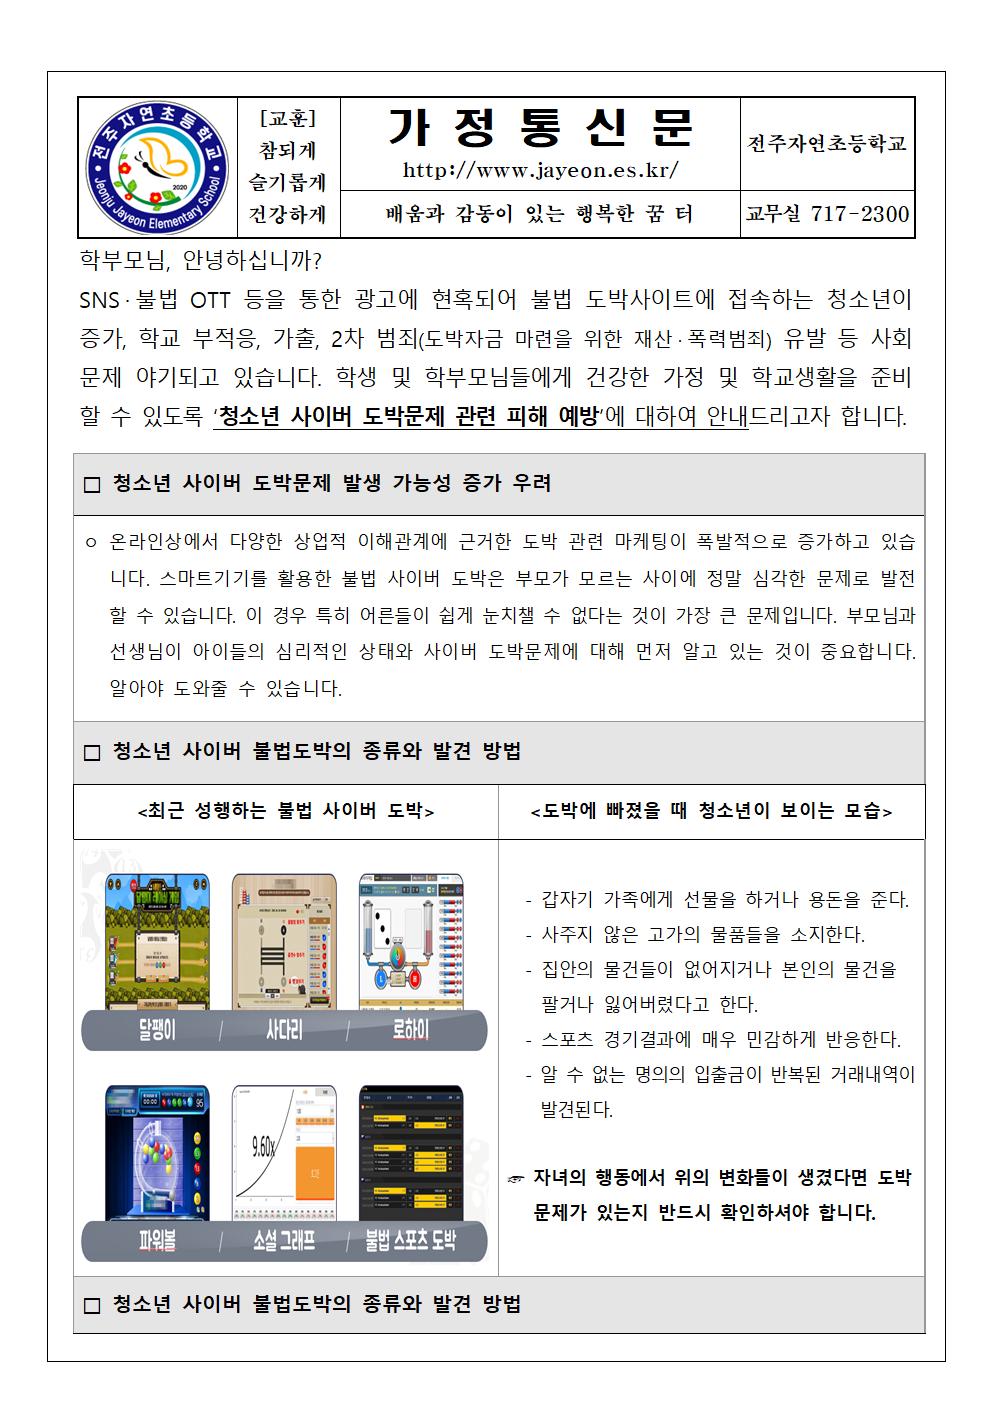 청소년 사이버 도박문제 피해 예방 가정통신문001